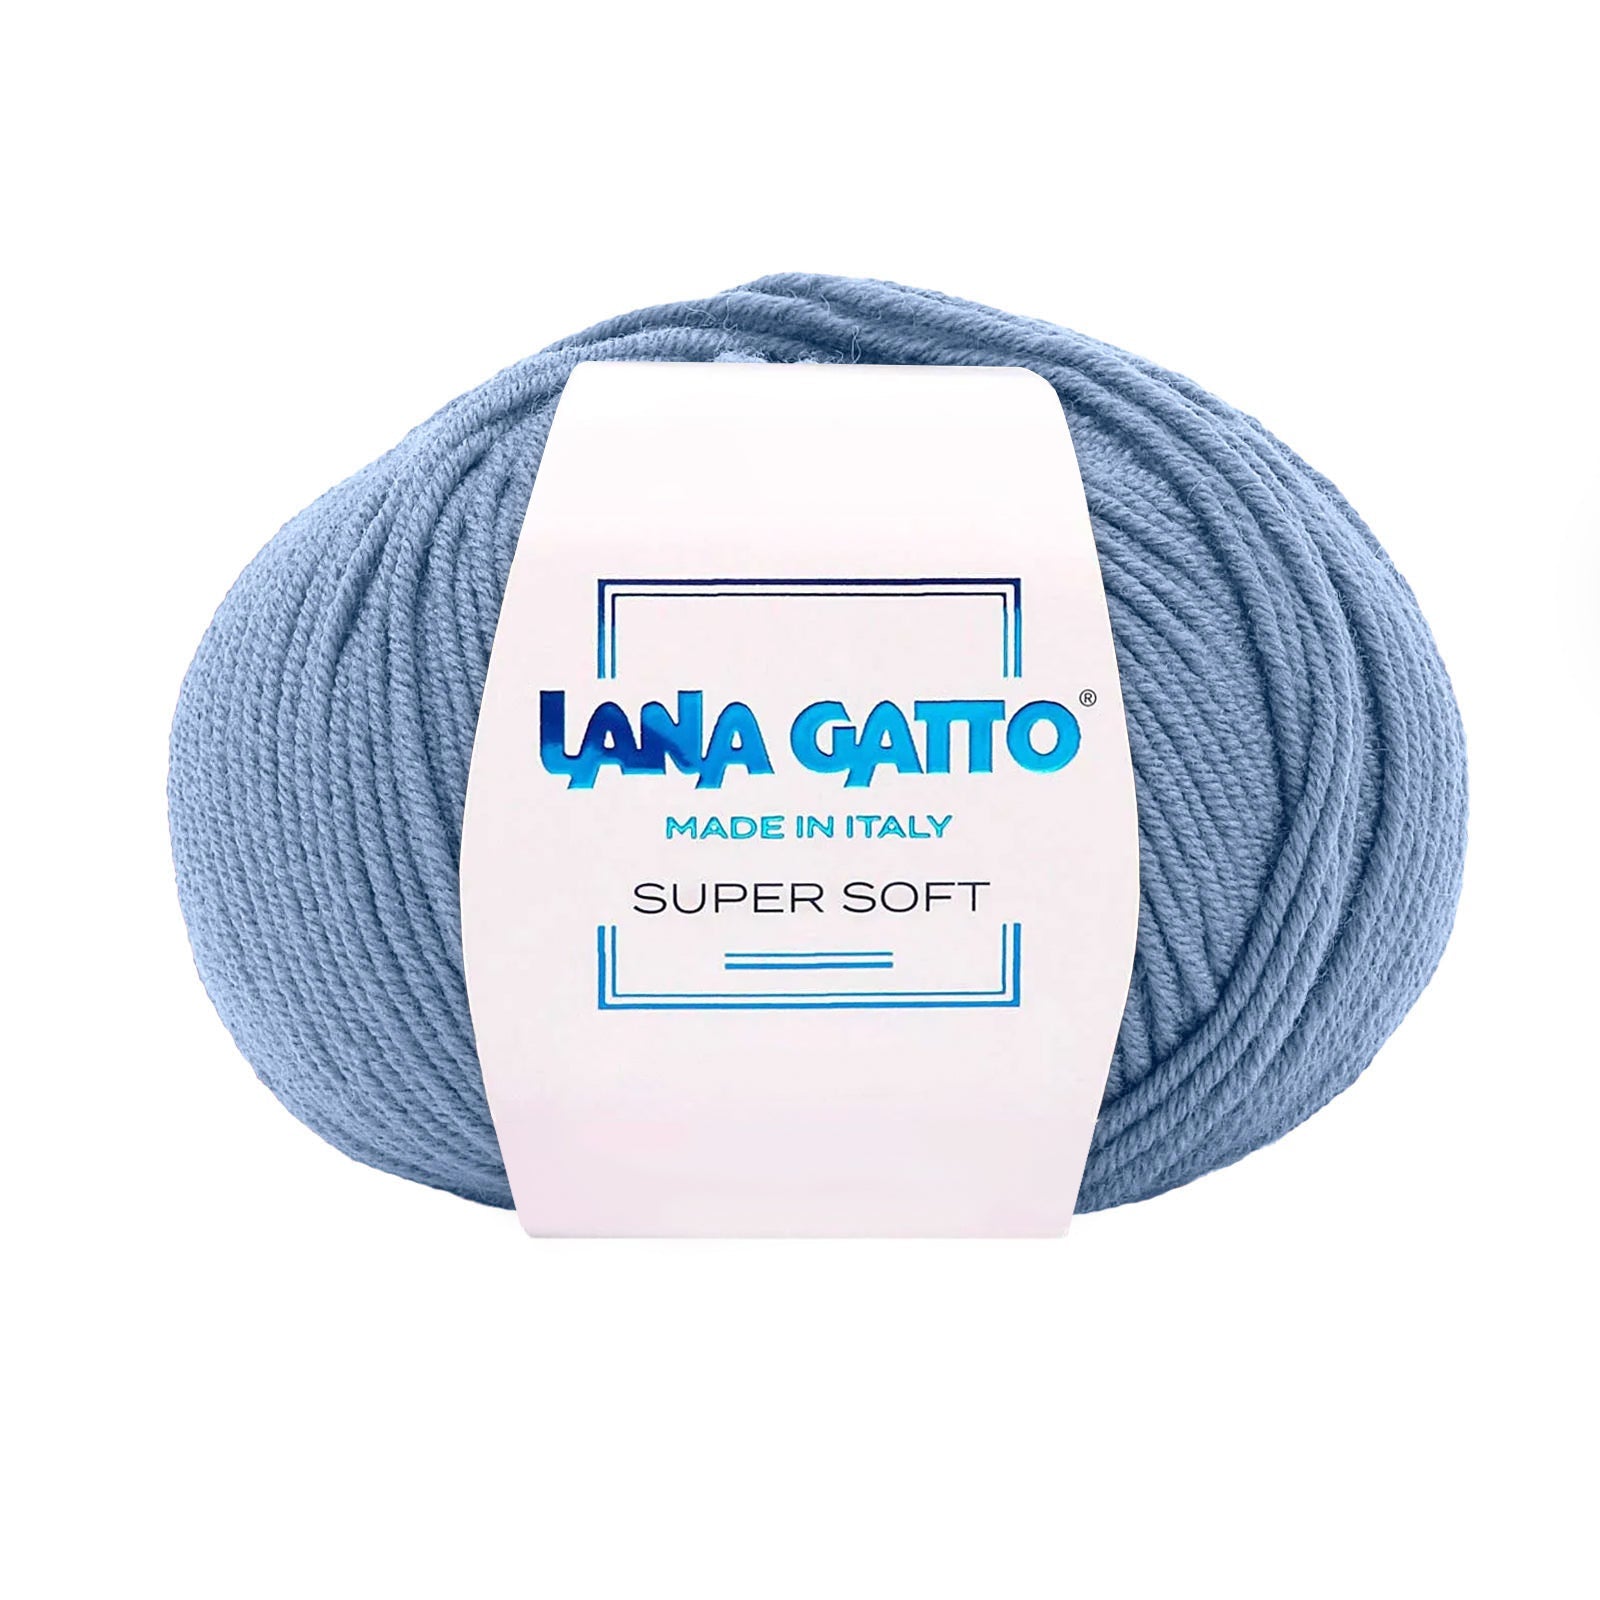 Gomitolo 100% Pura Lana Vergine Merino Extrafine Lana Gatto Linea Super Soft - Tonalità Blu - Azzurro - 13158 - Gomitolo